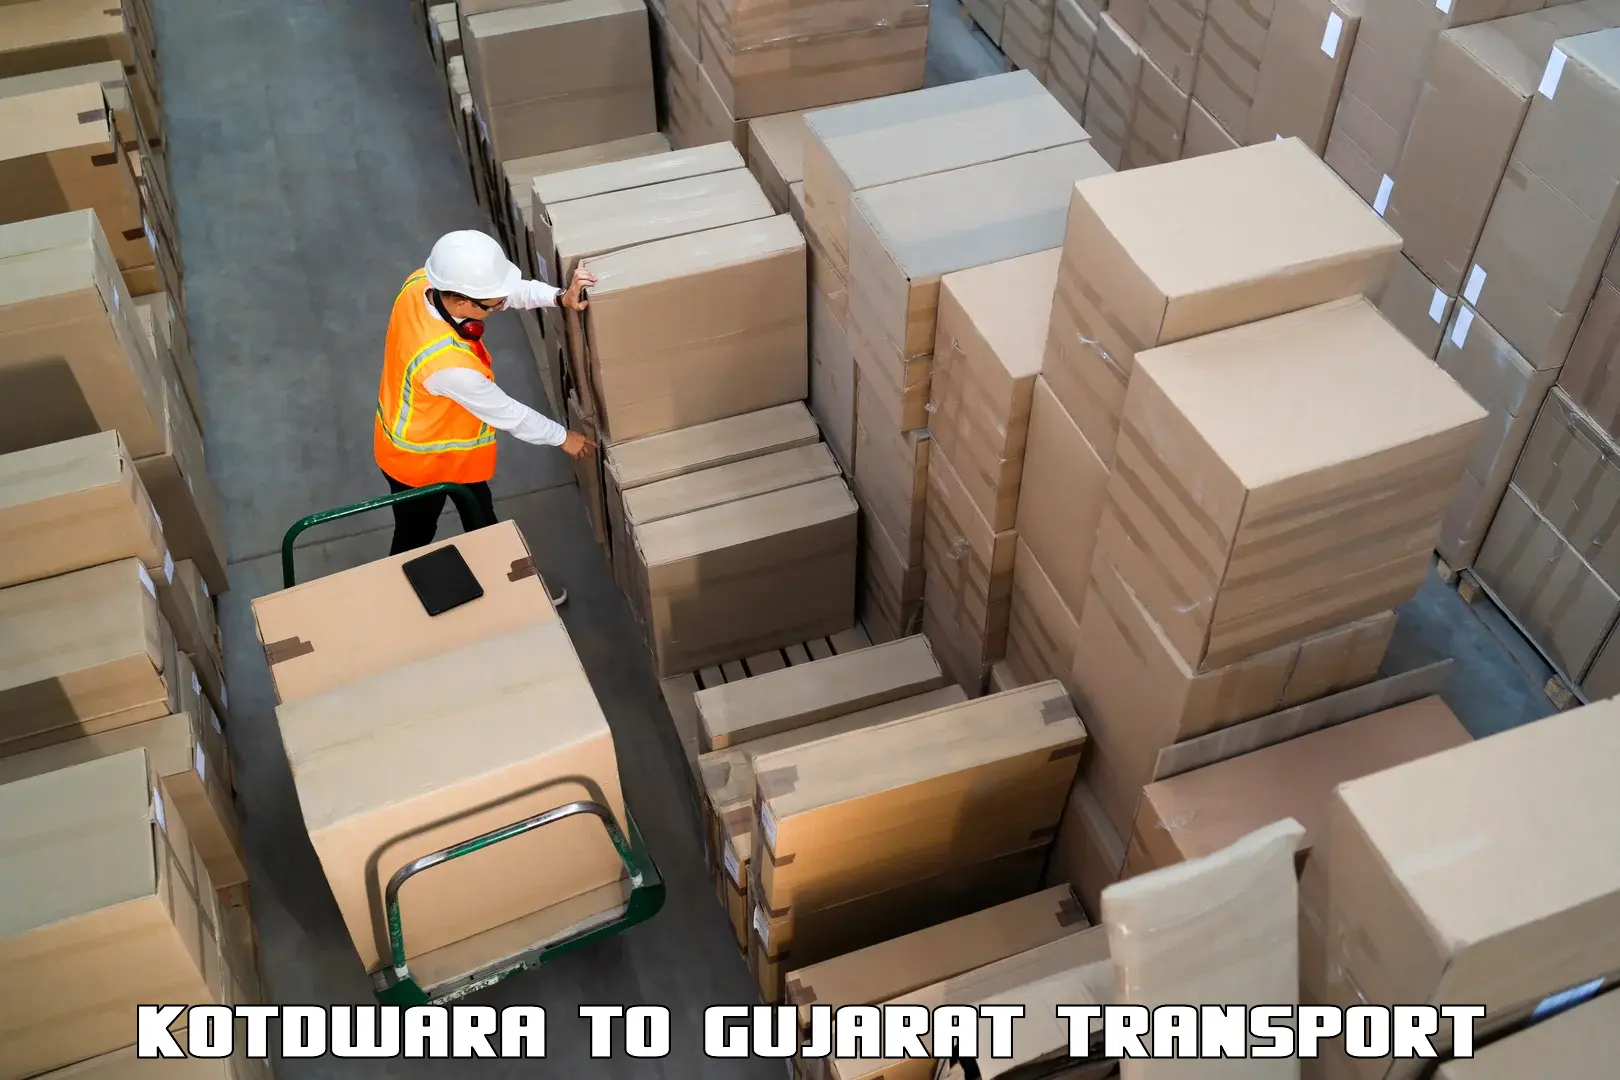 Cargo transport services Kotdwara to Vagara